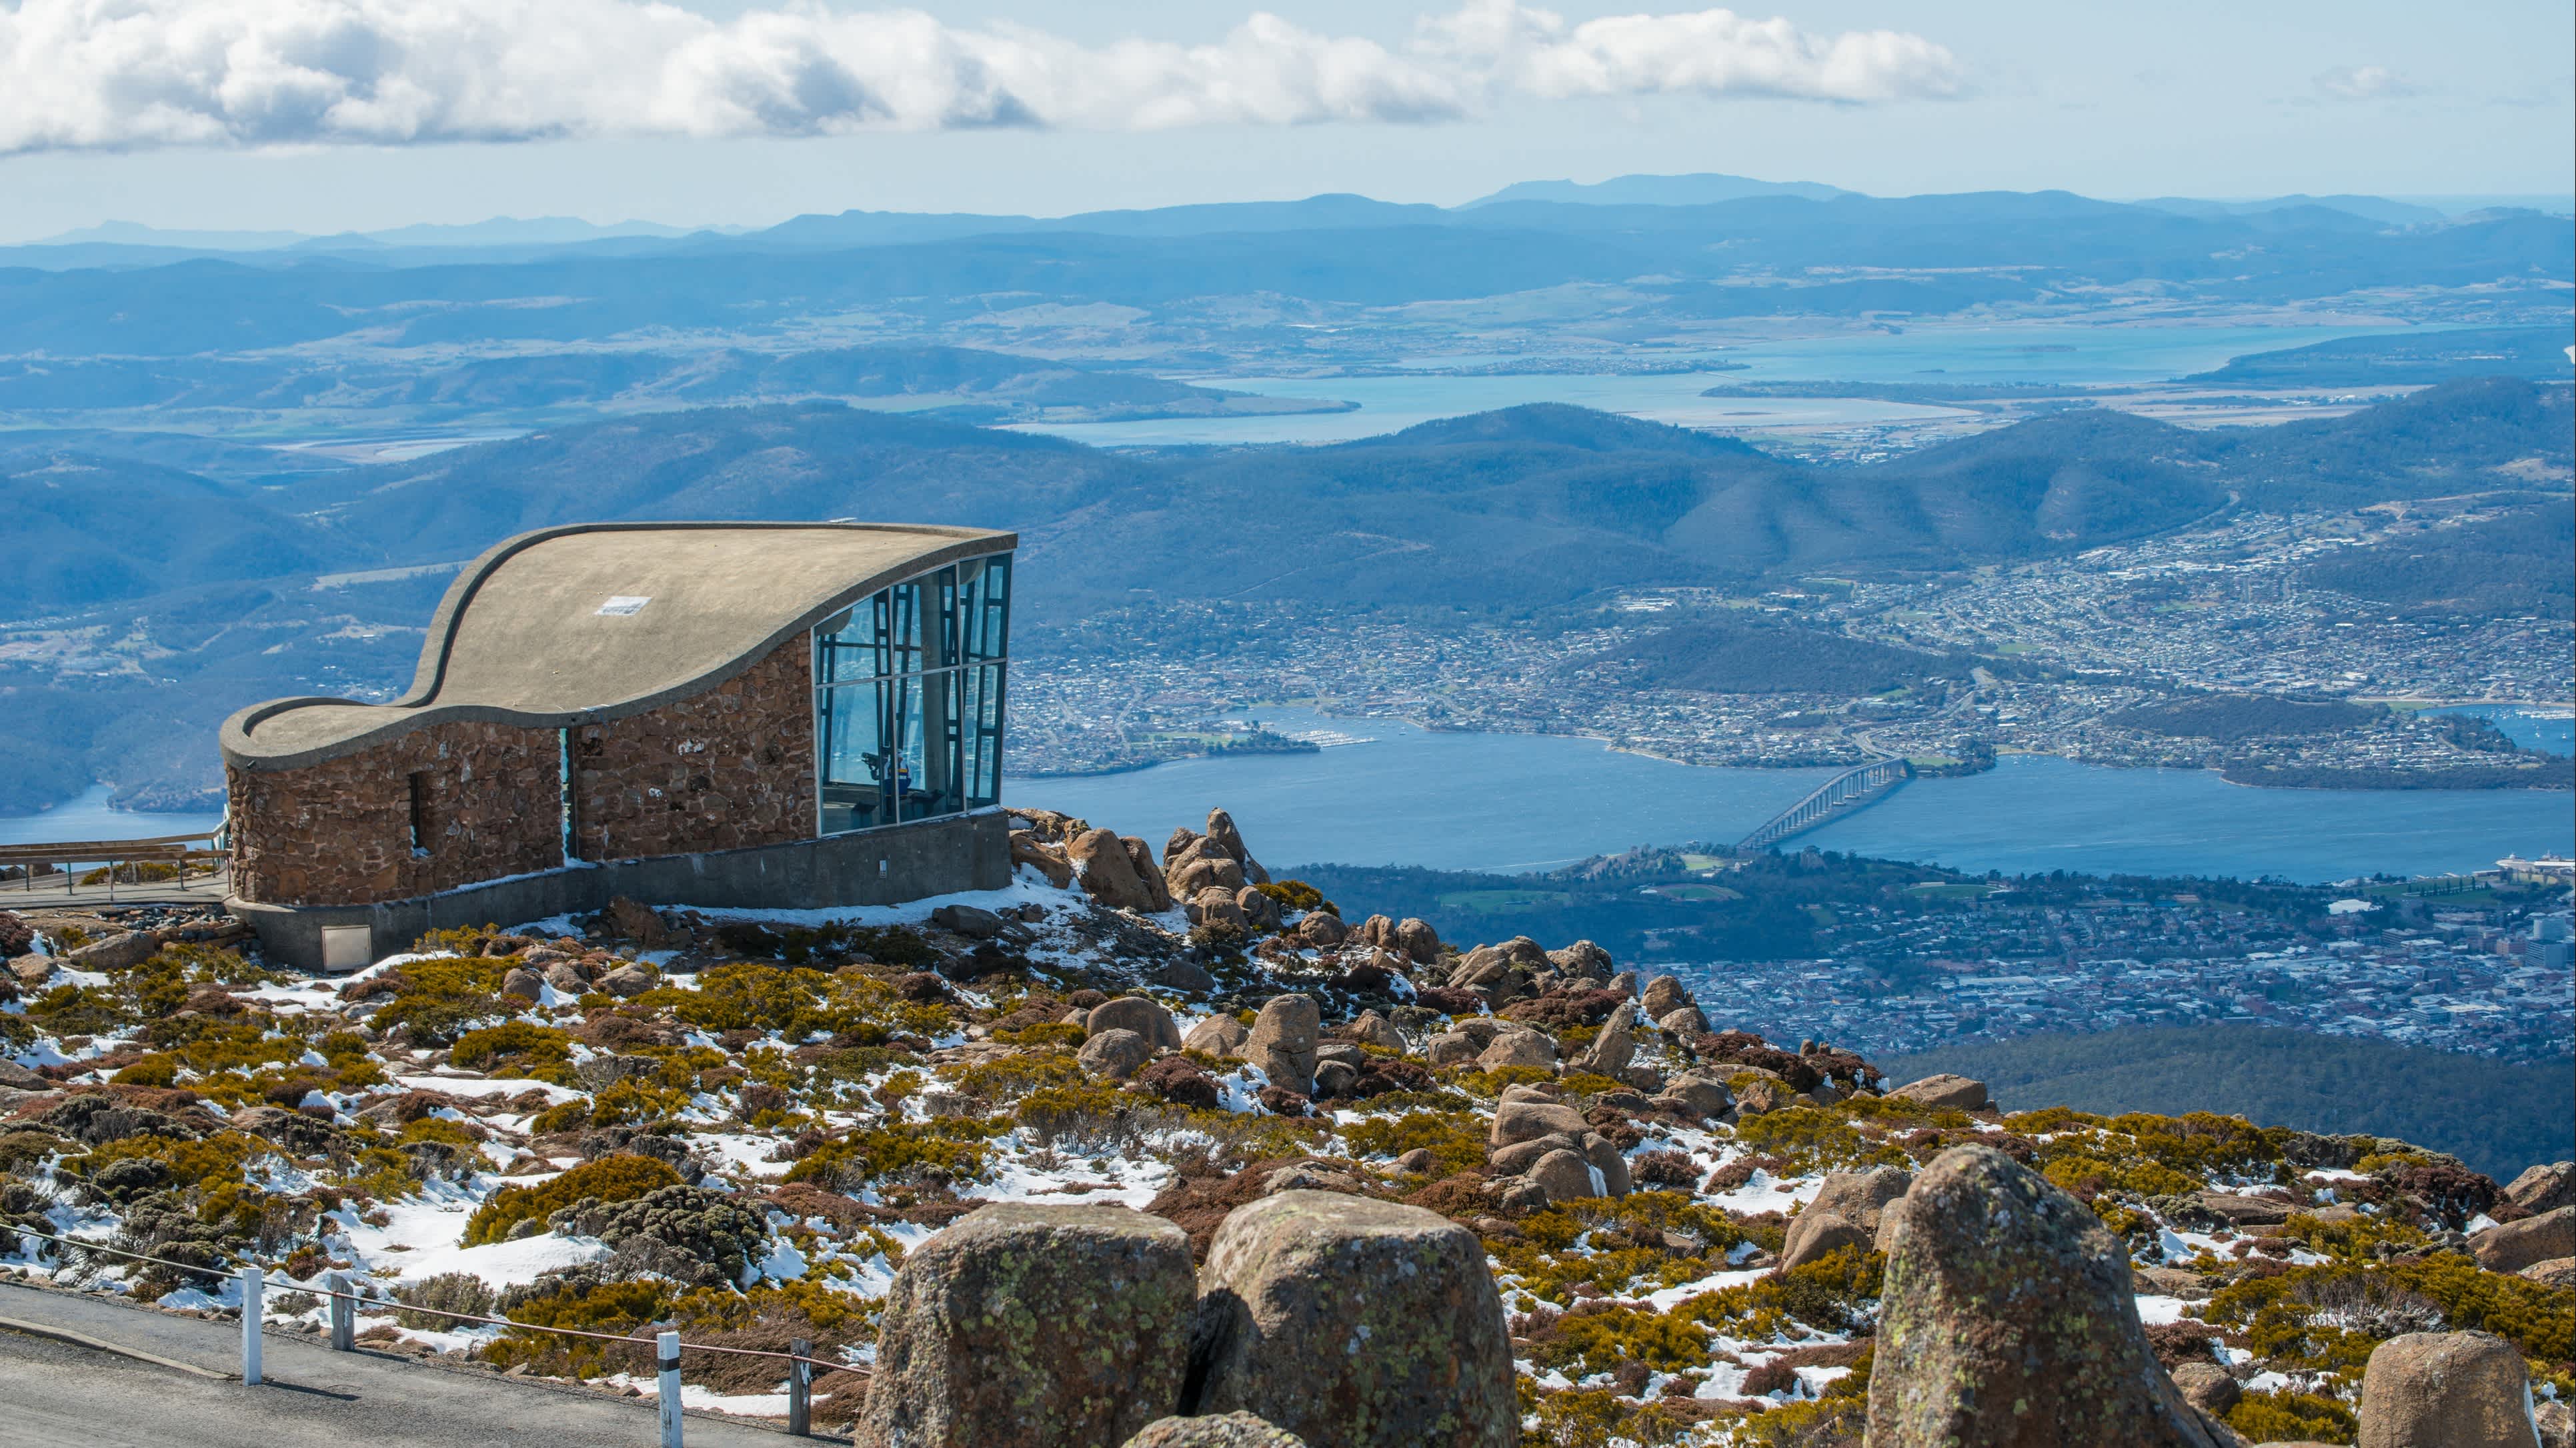 Vue panoramique sur la ville de Hobart depuis le Mont Wellington, à découvrir pendant votre circuit en Australie.